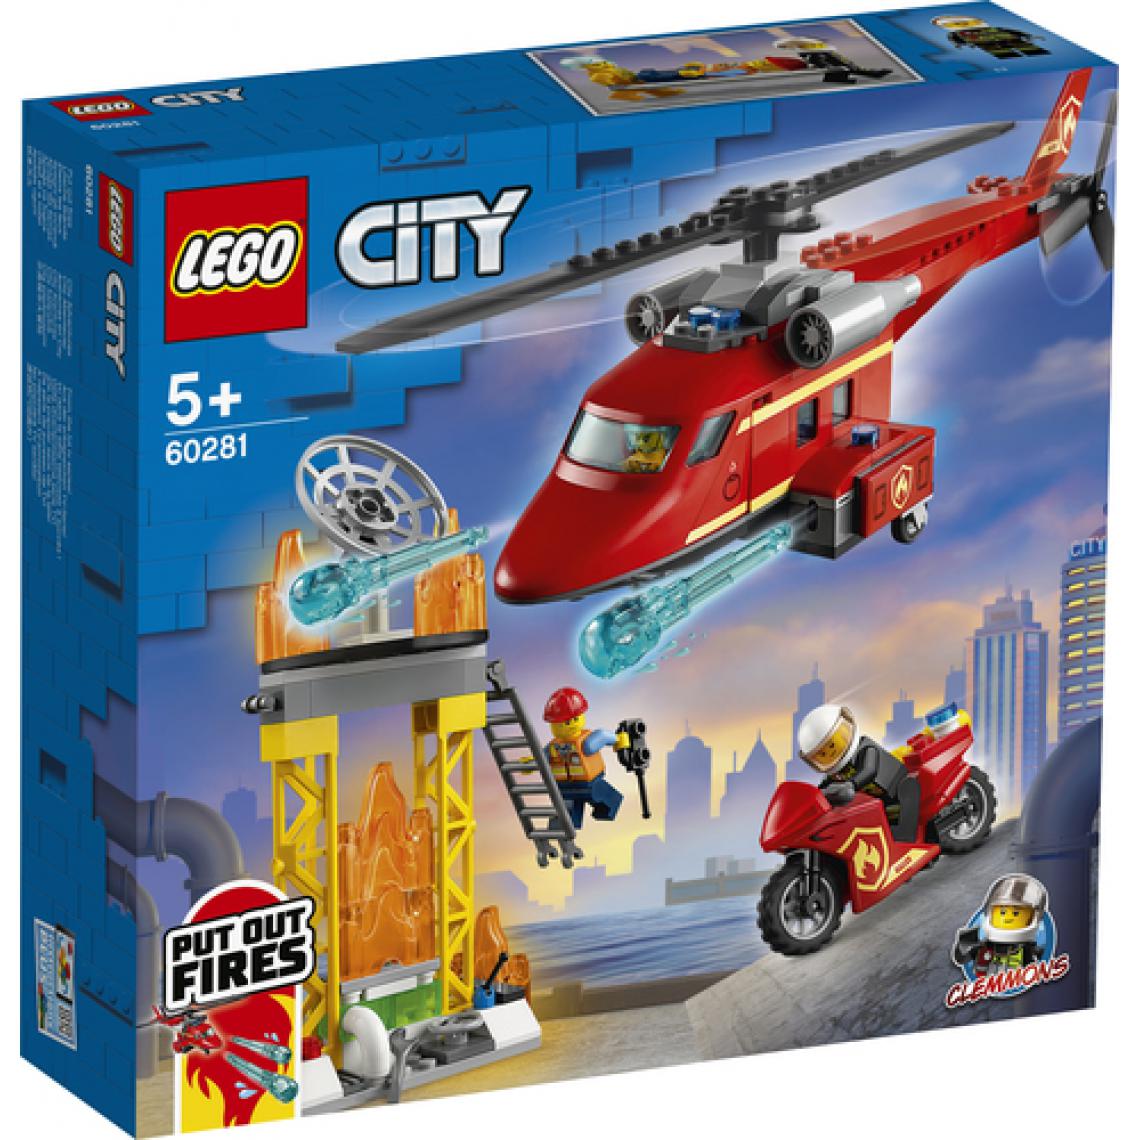 Lego - LEGO City 60281 L'hélicoptere de secours des pompiers, jeu de construction avec une moto, un pompier et des pilotes miniatures - Briques Lego